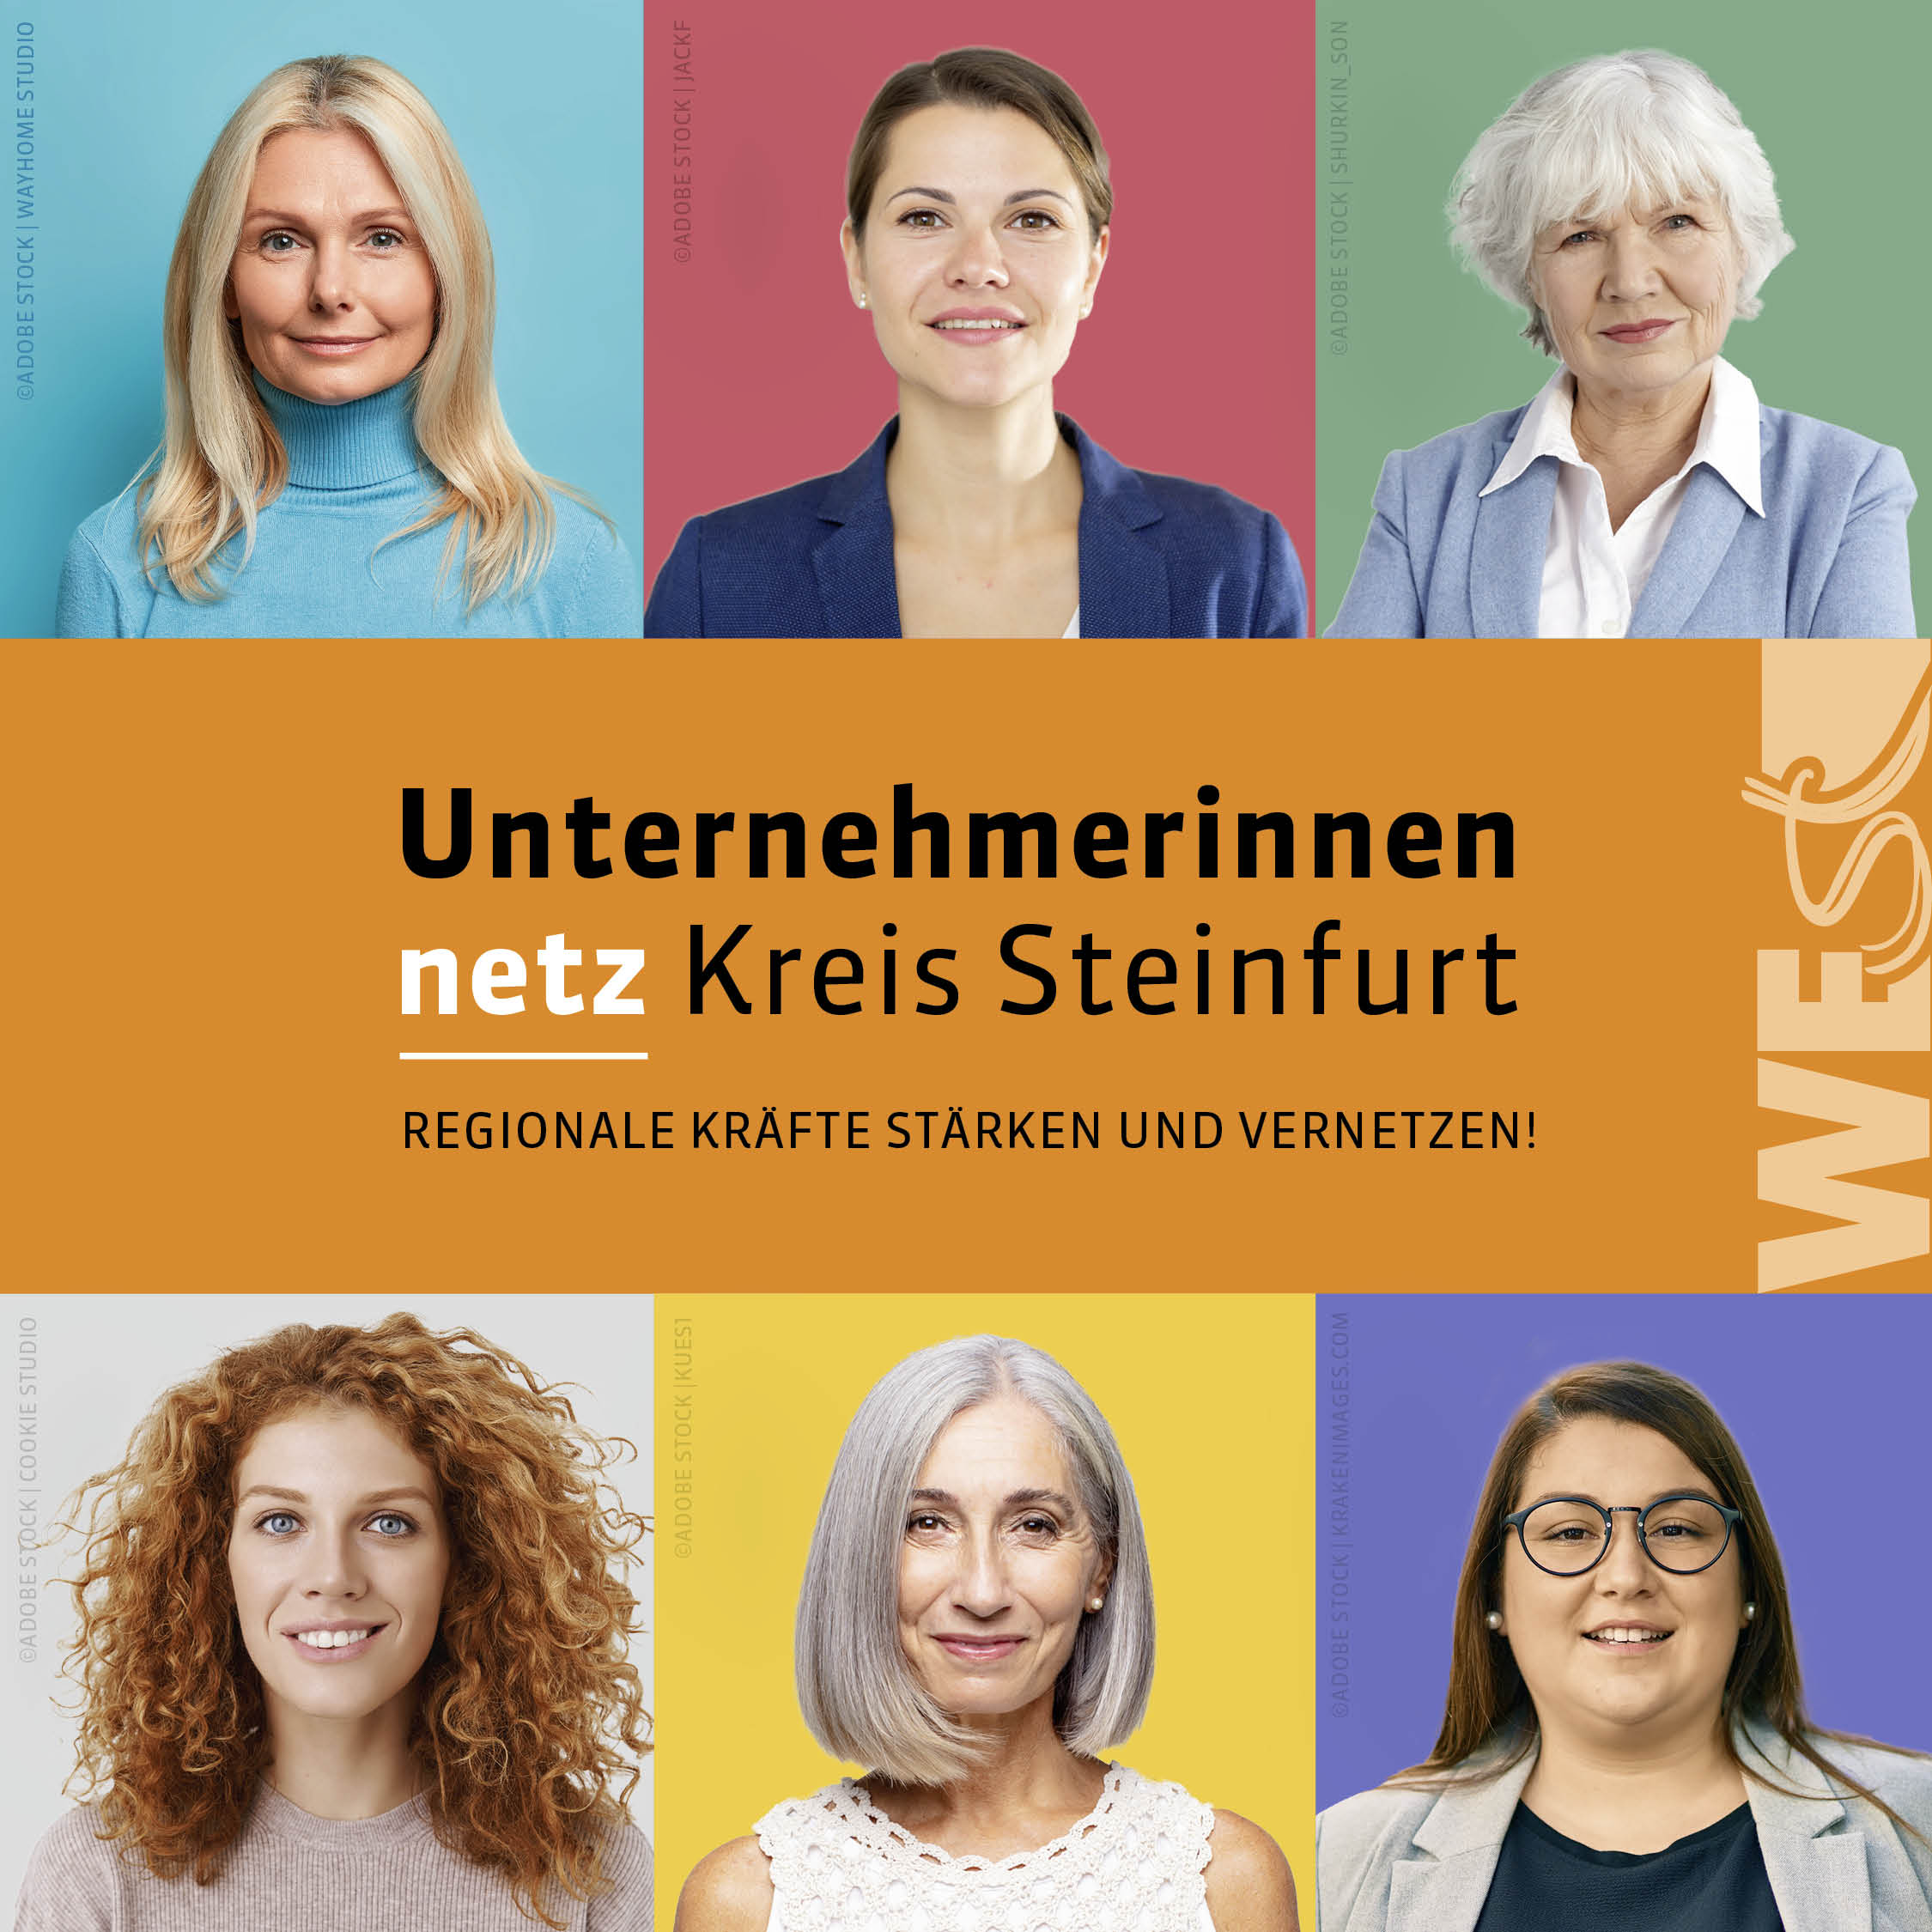 Final_Unternehmerinnennetz Kreis Steinfurt_Instagram-Post_logo